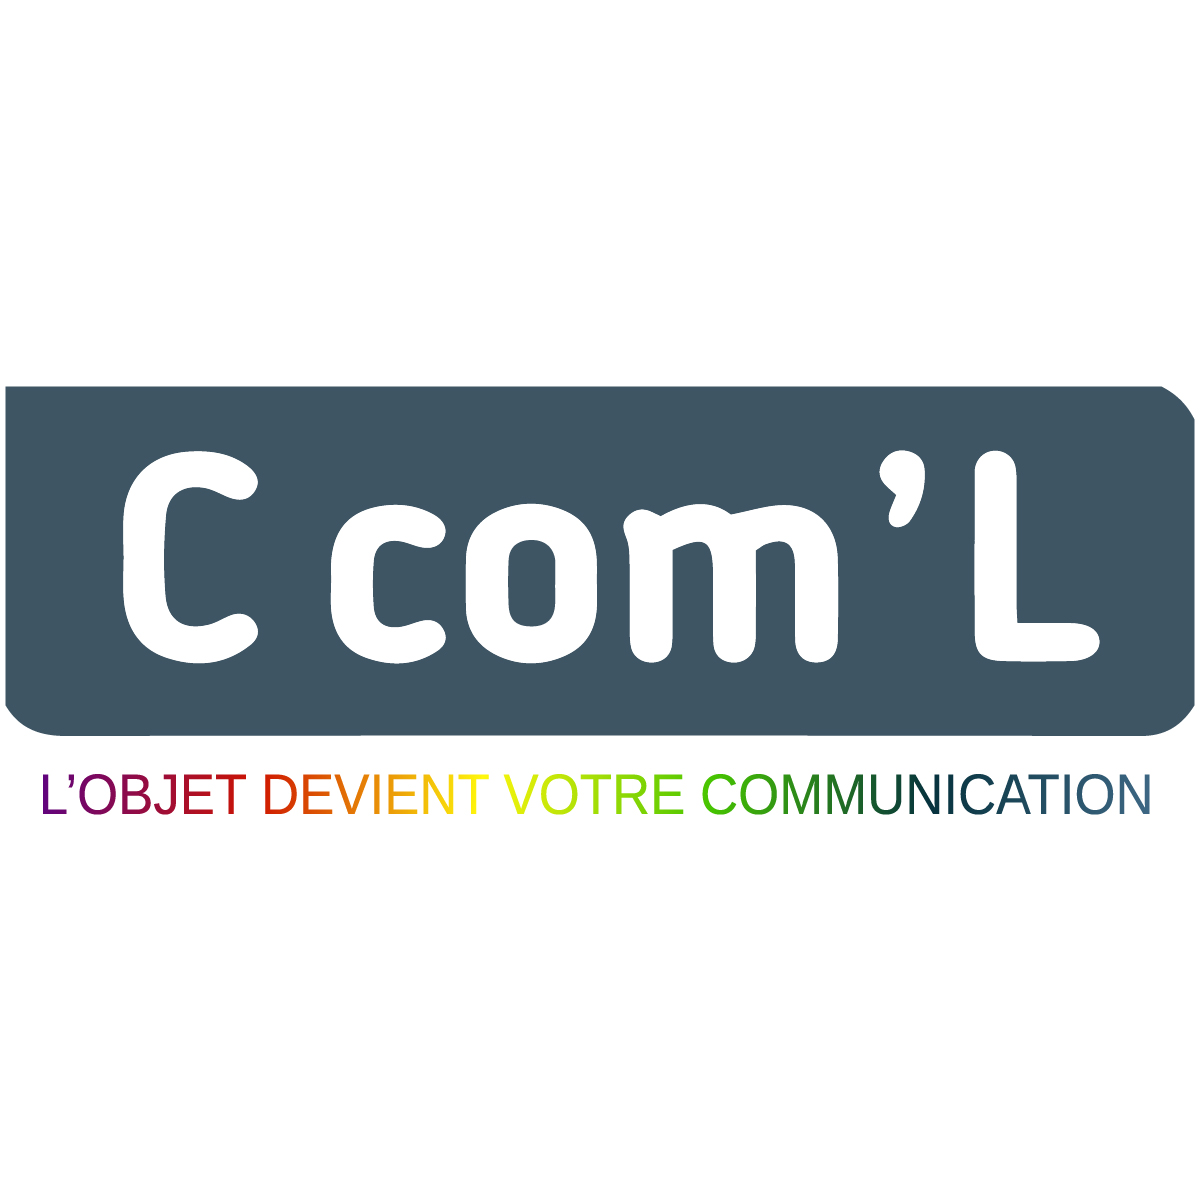 (c) C-coml.com